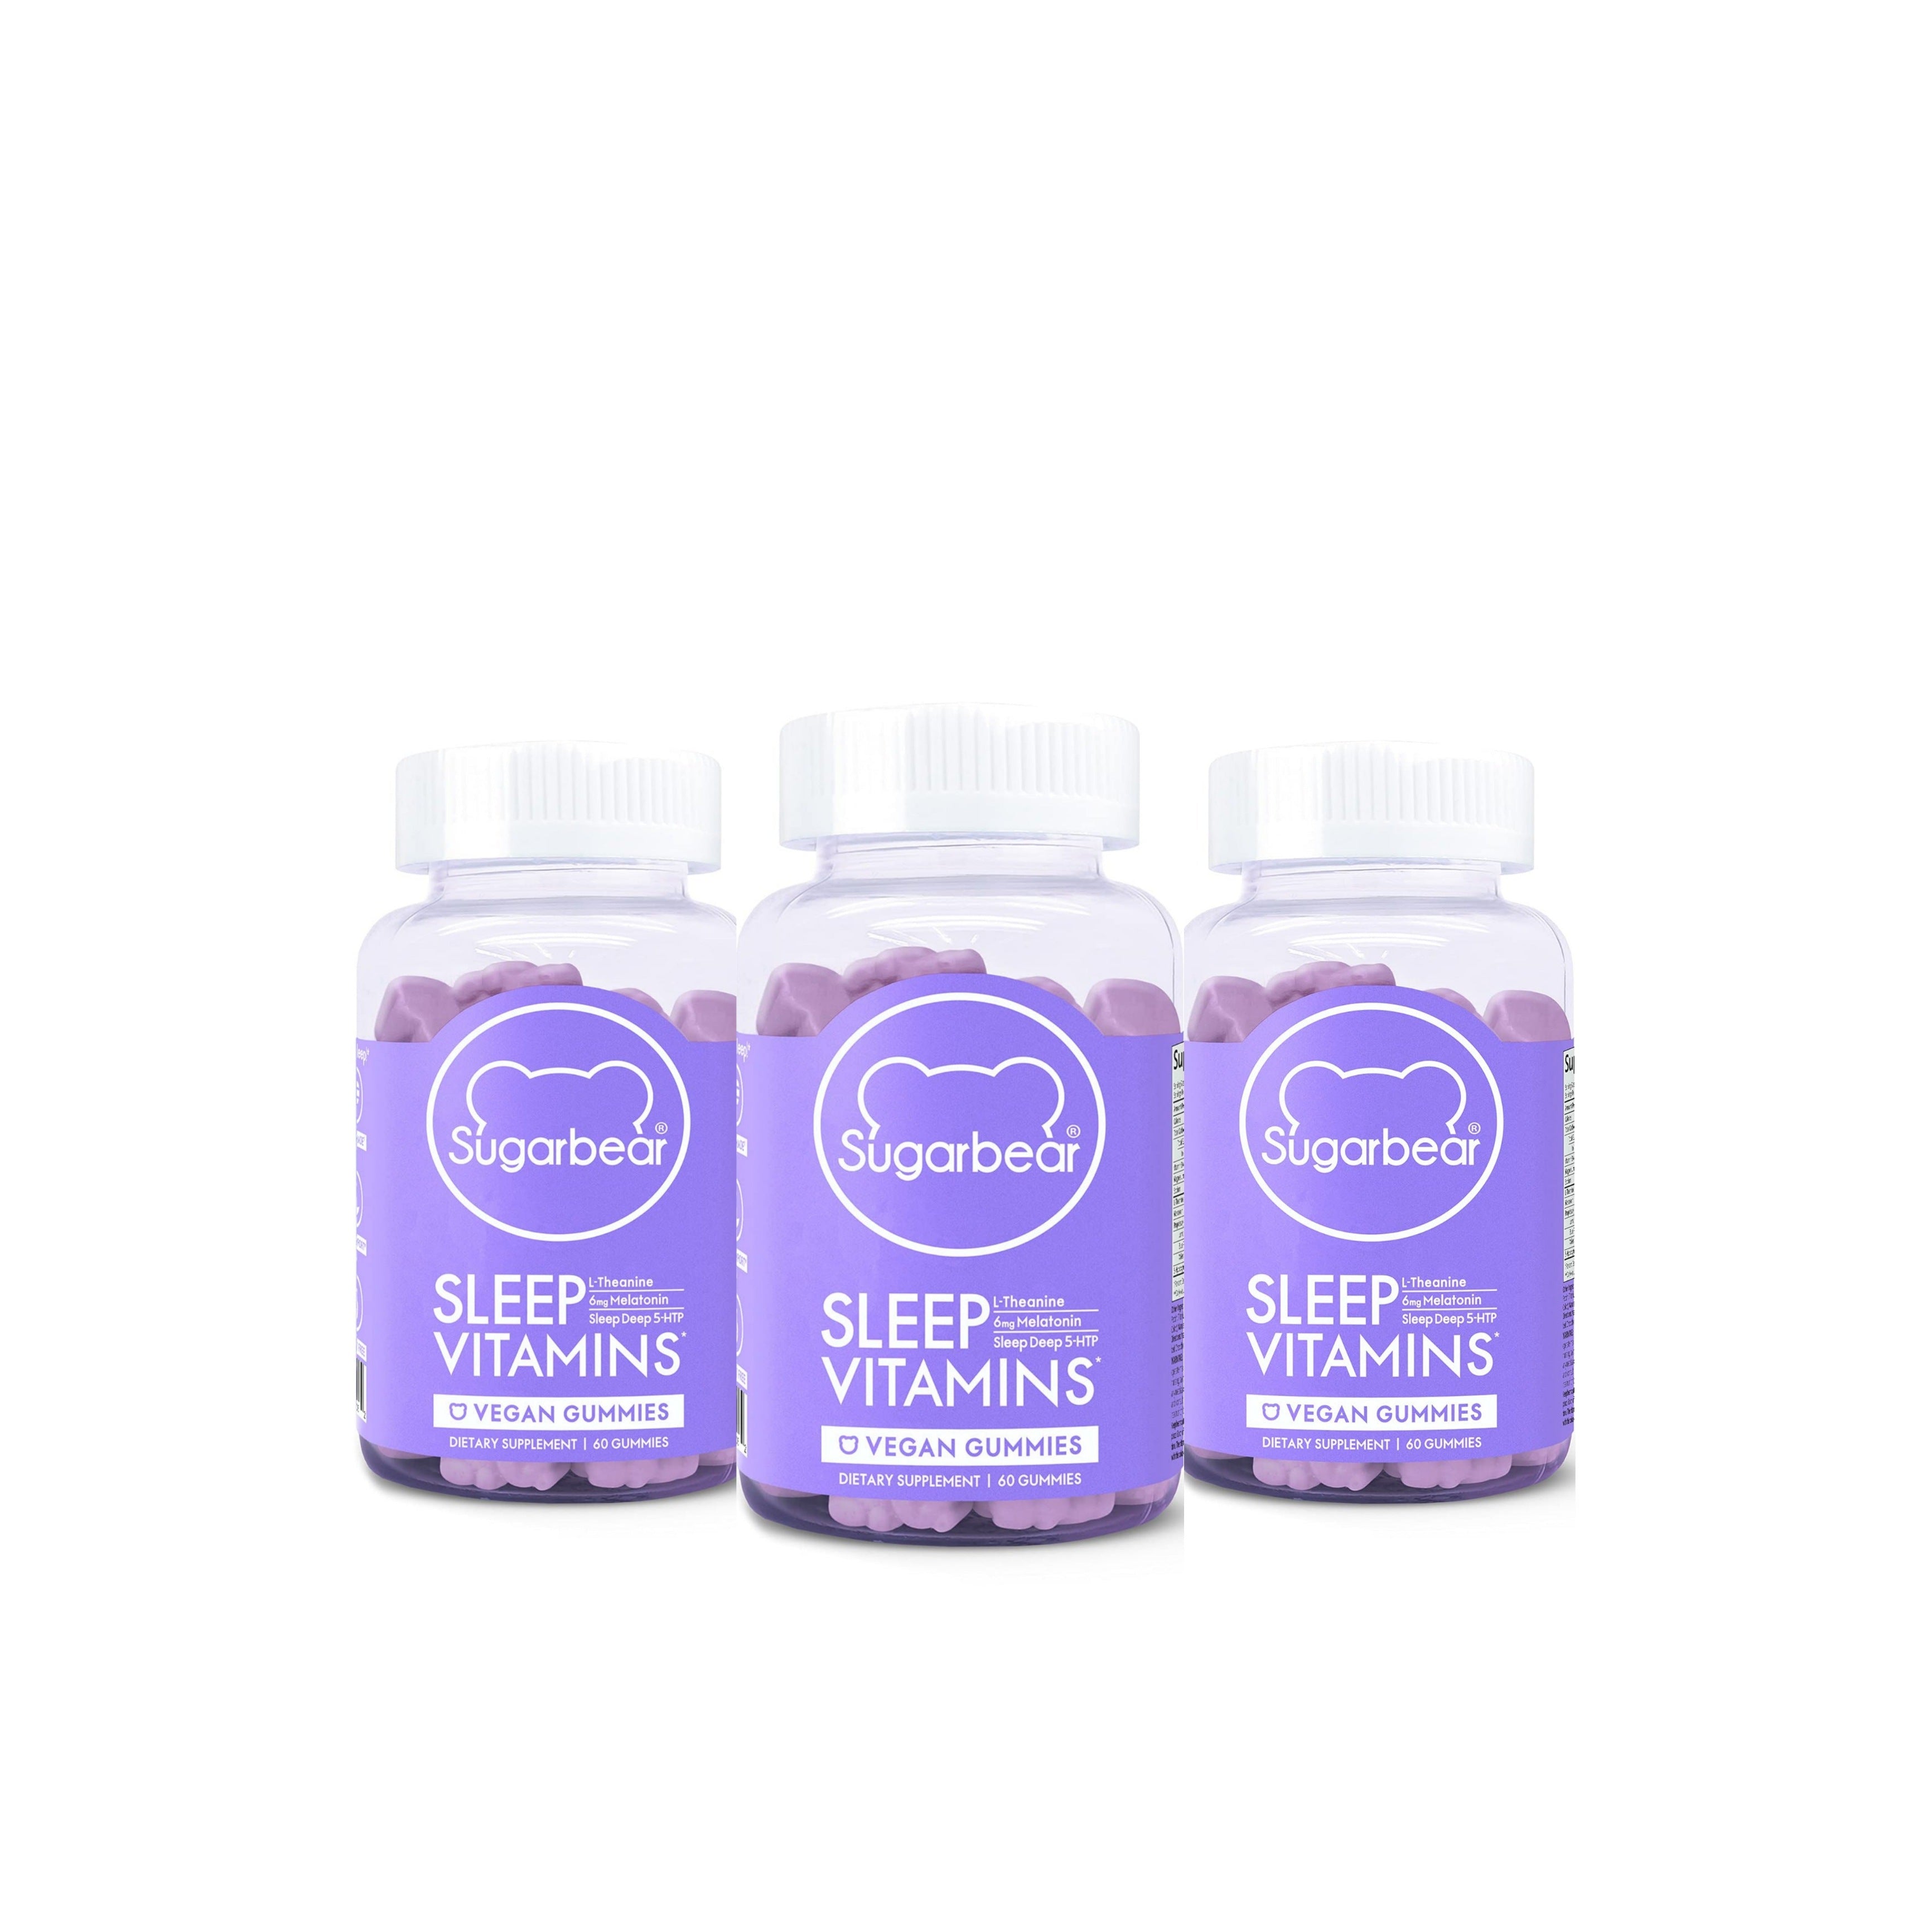 SUGARBEAR Sleep Vitamins - 3 Month Pack كورس شوكربير سليب للنوم